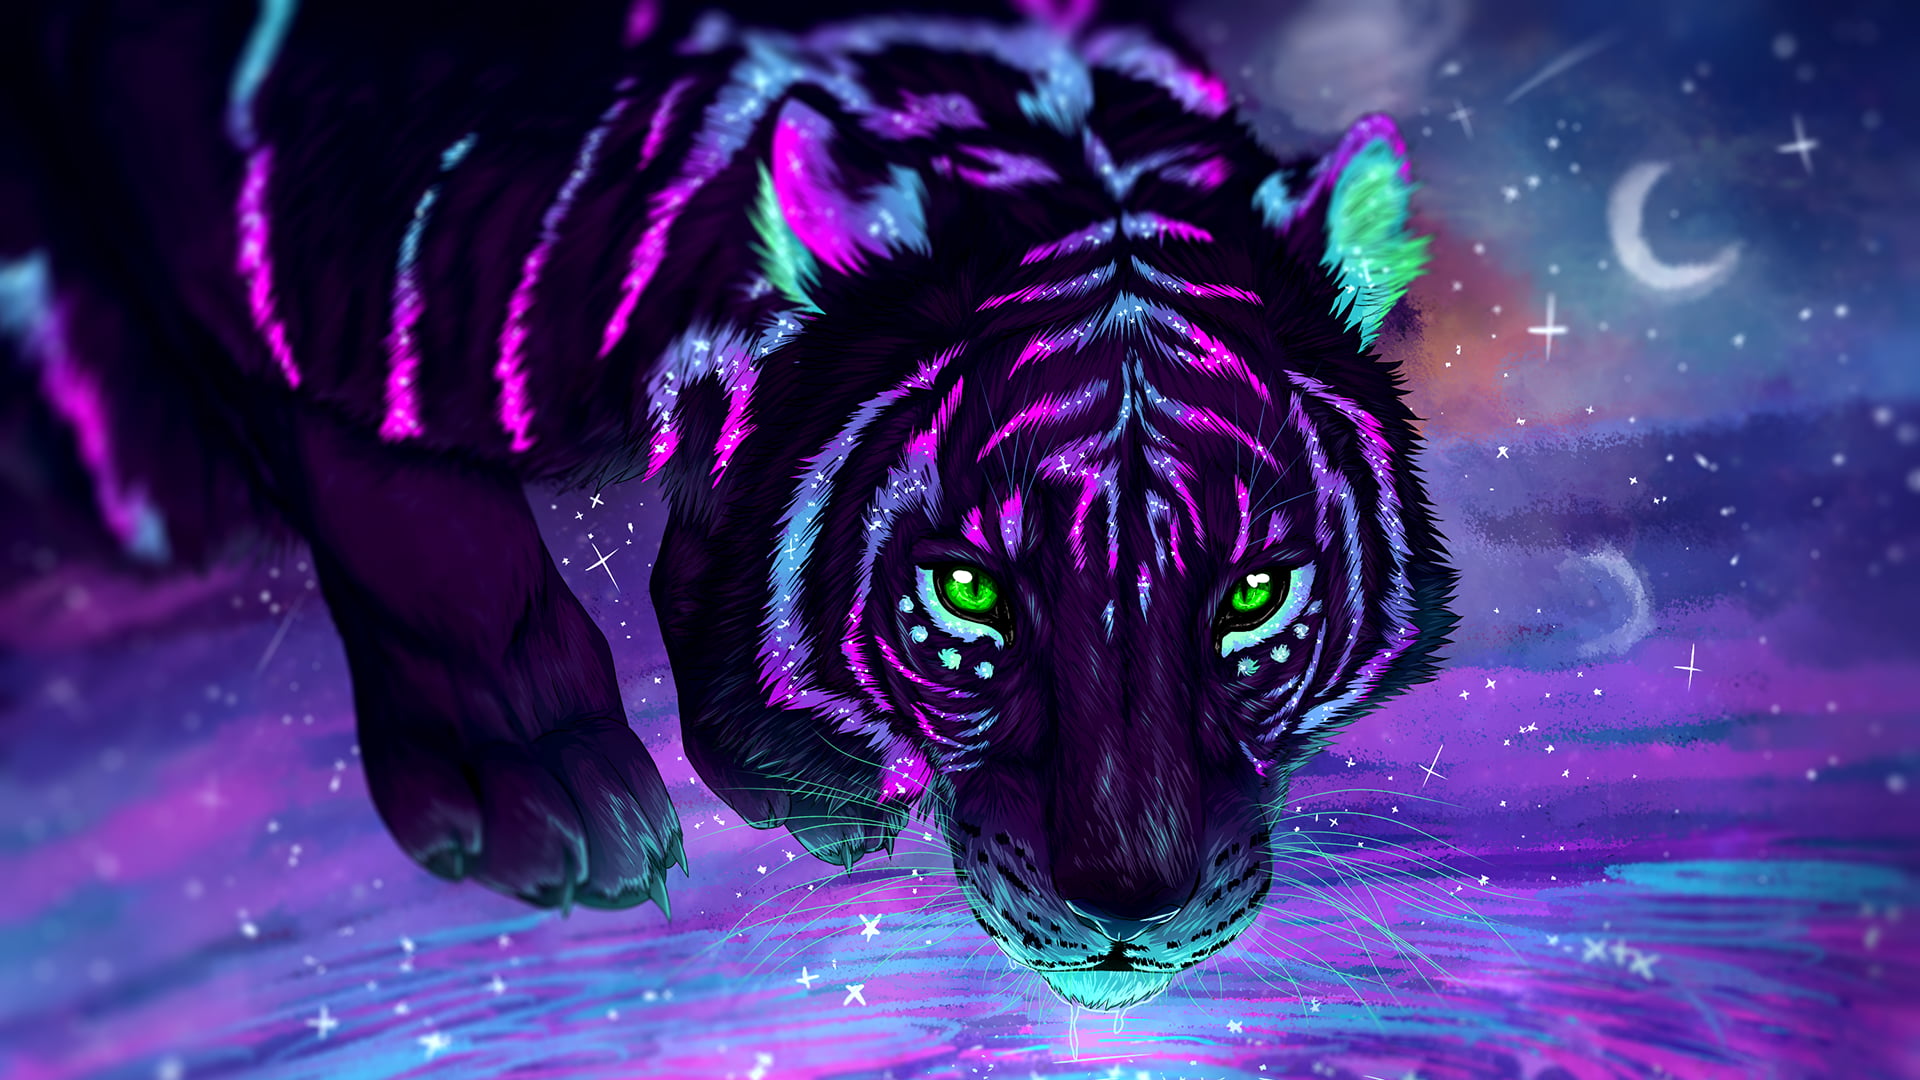 black and purple tiger painting, digital art, tiger, stars, galaxy